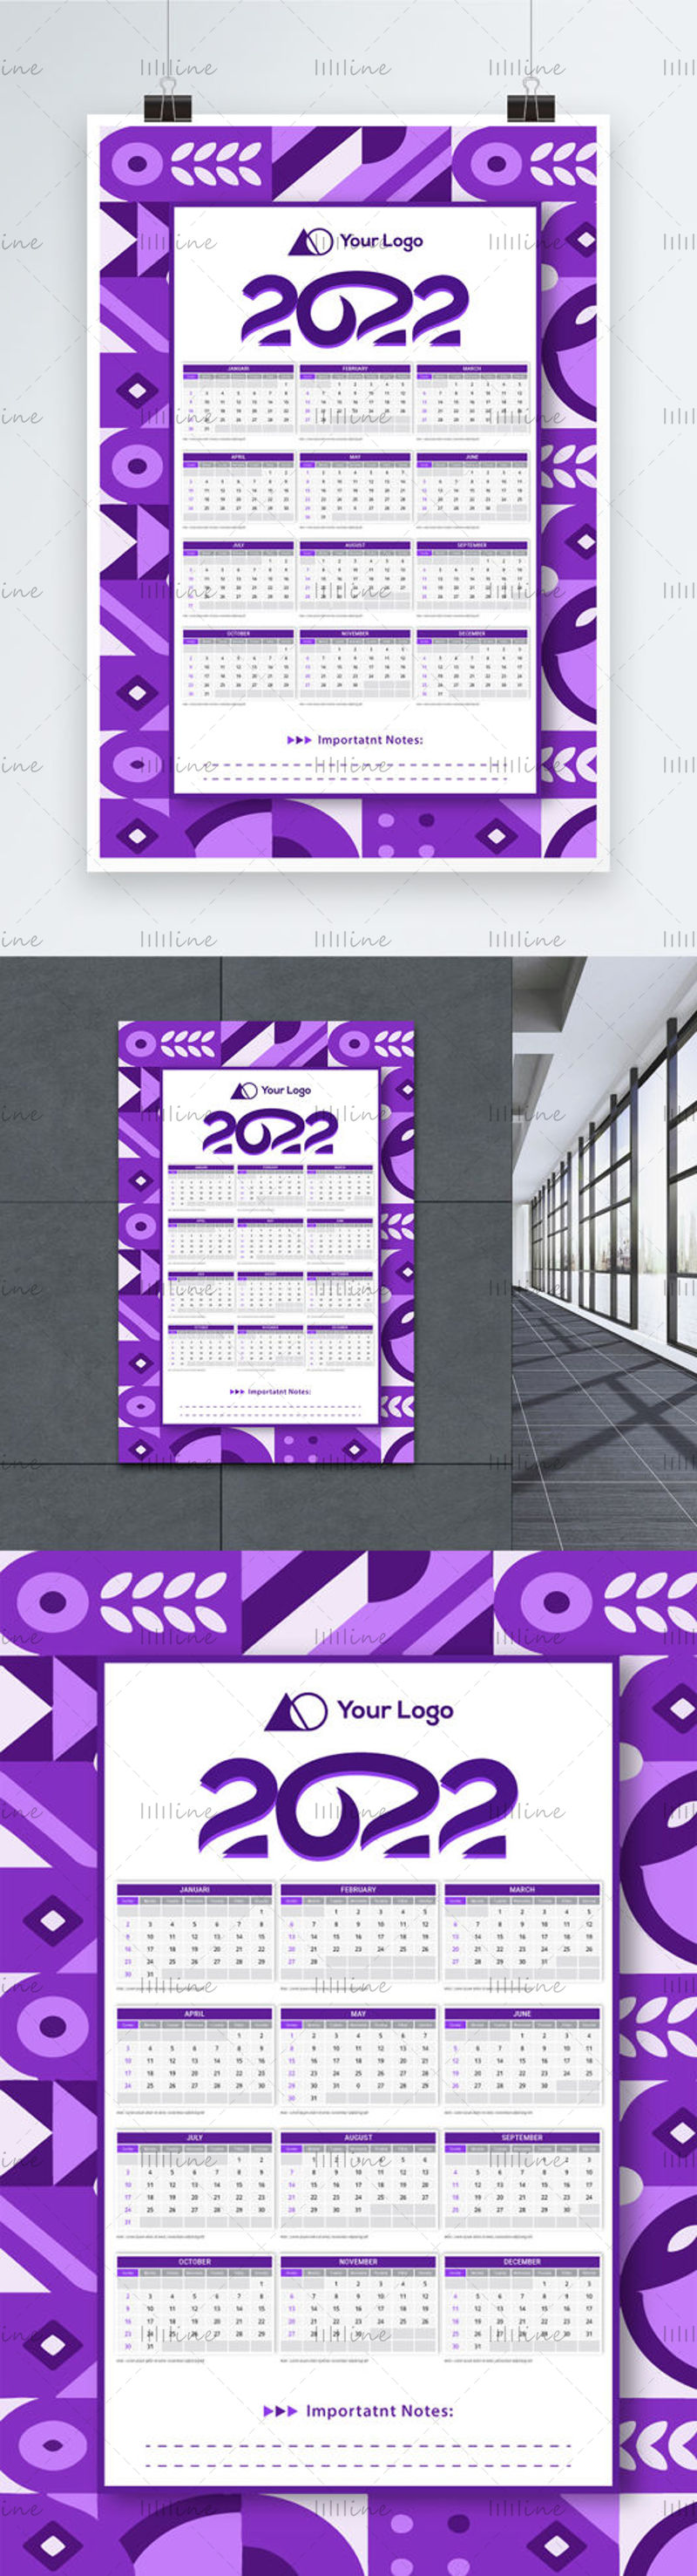 Sjabloon voor spandoekkalender met geometrisch thema voor 2022